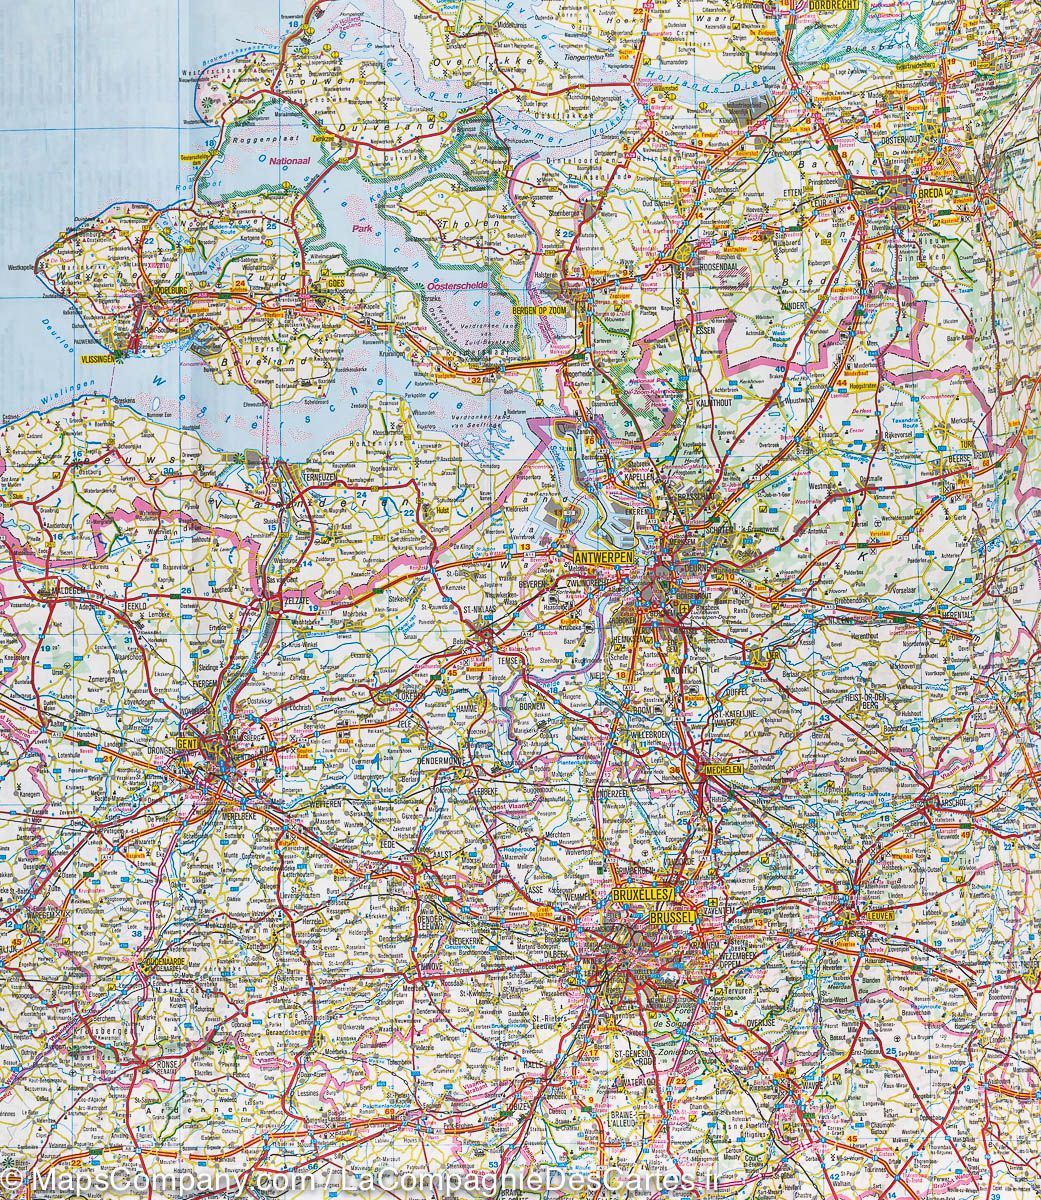 Carte de voyage des Pays-Bas, Belgique &amp; Luxembourg | IGN - La Compagnie des Cartes